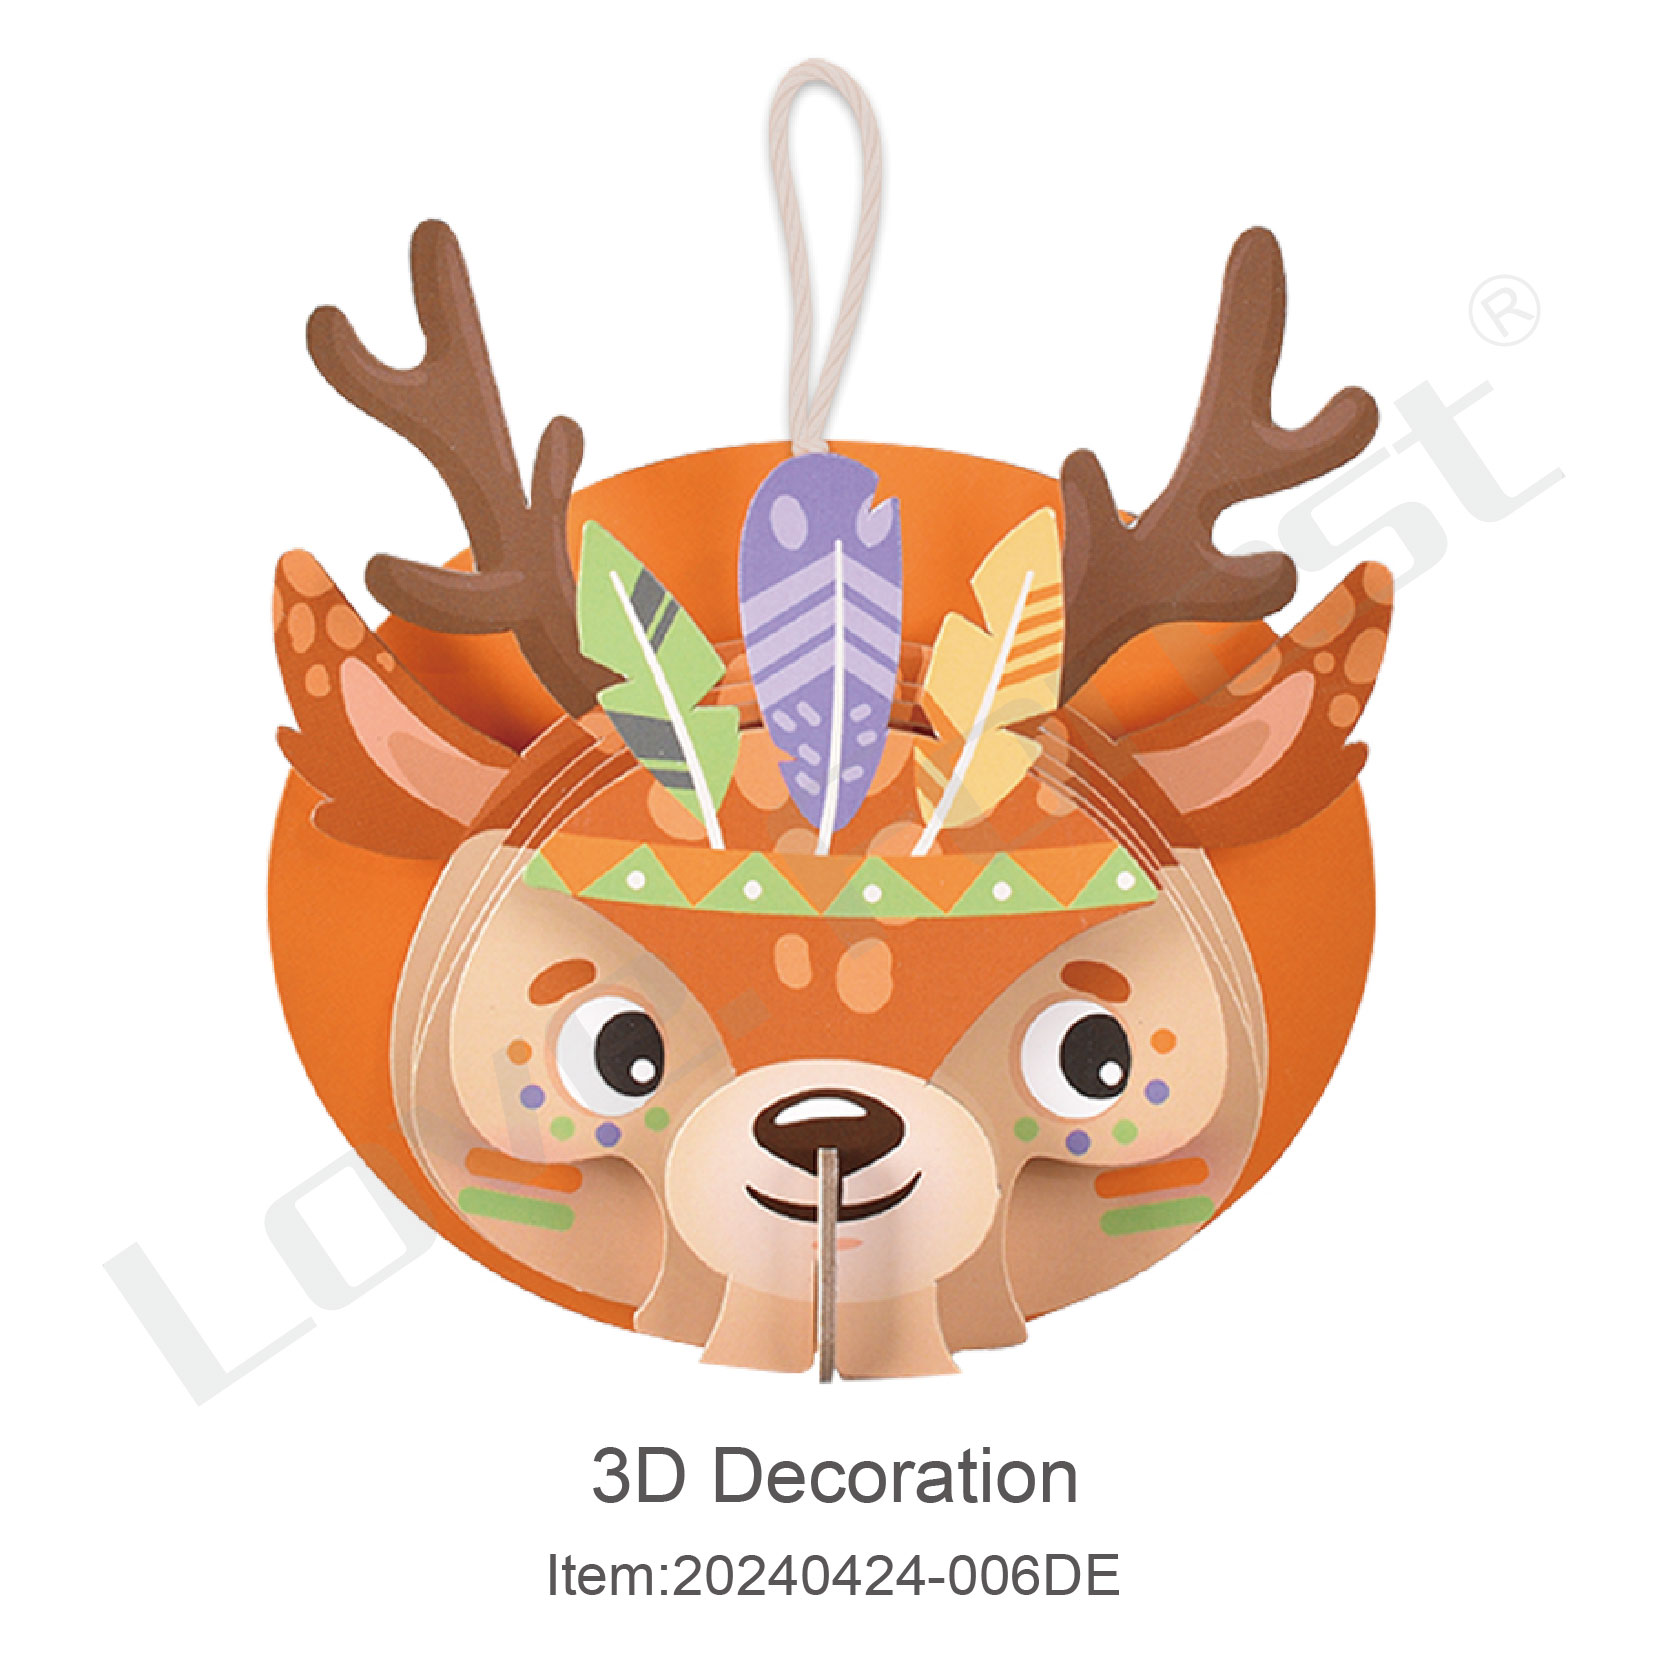 3D Decoration